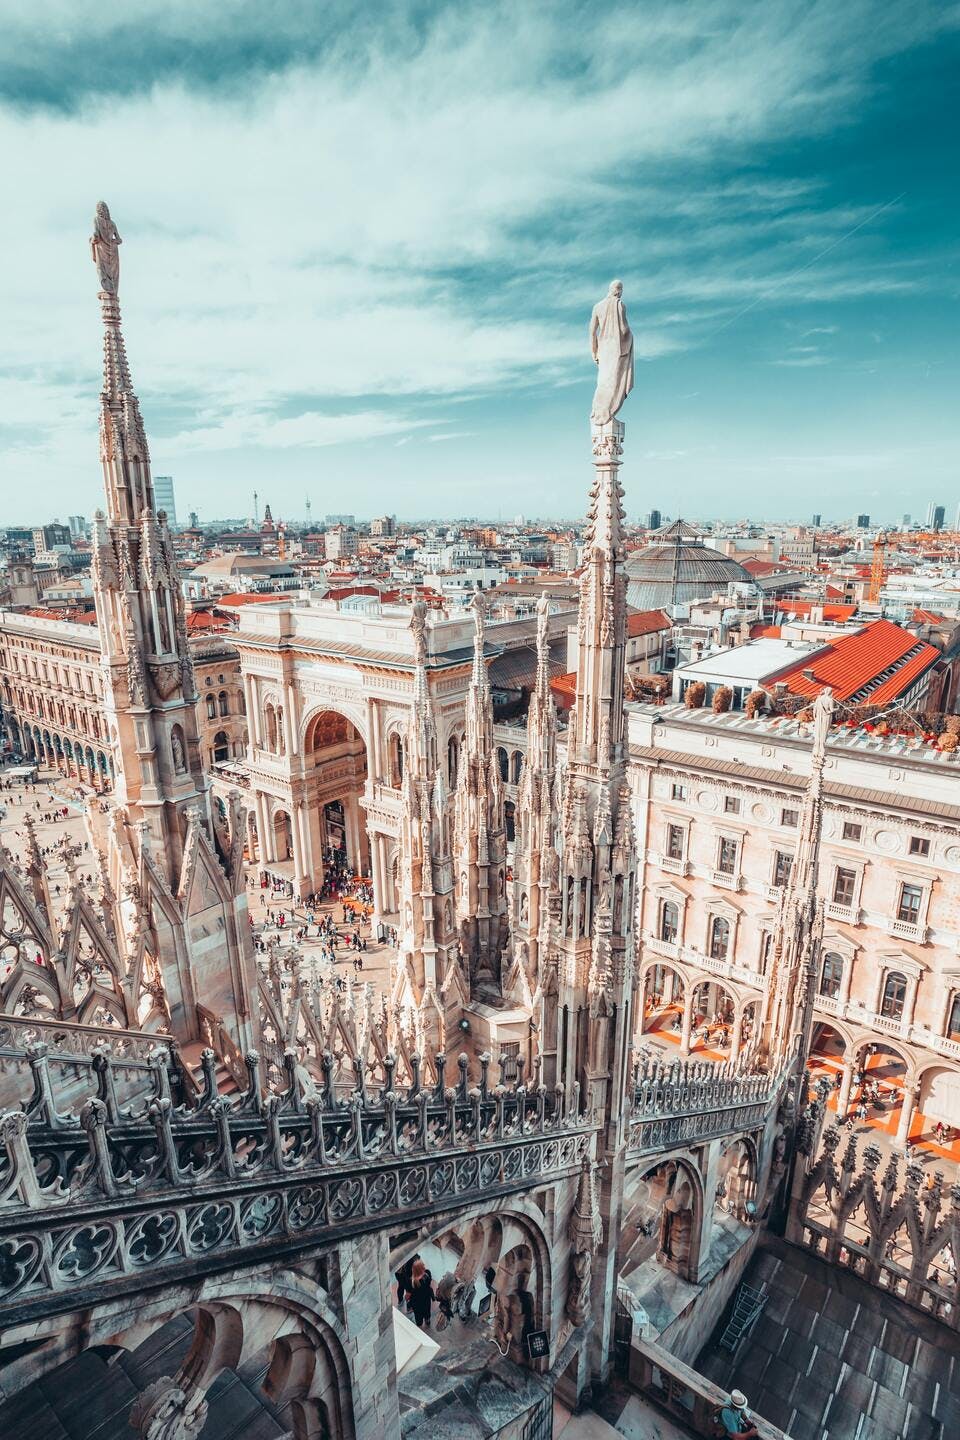 The Duomo of Milan